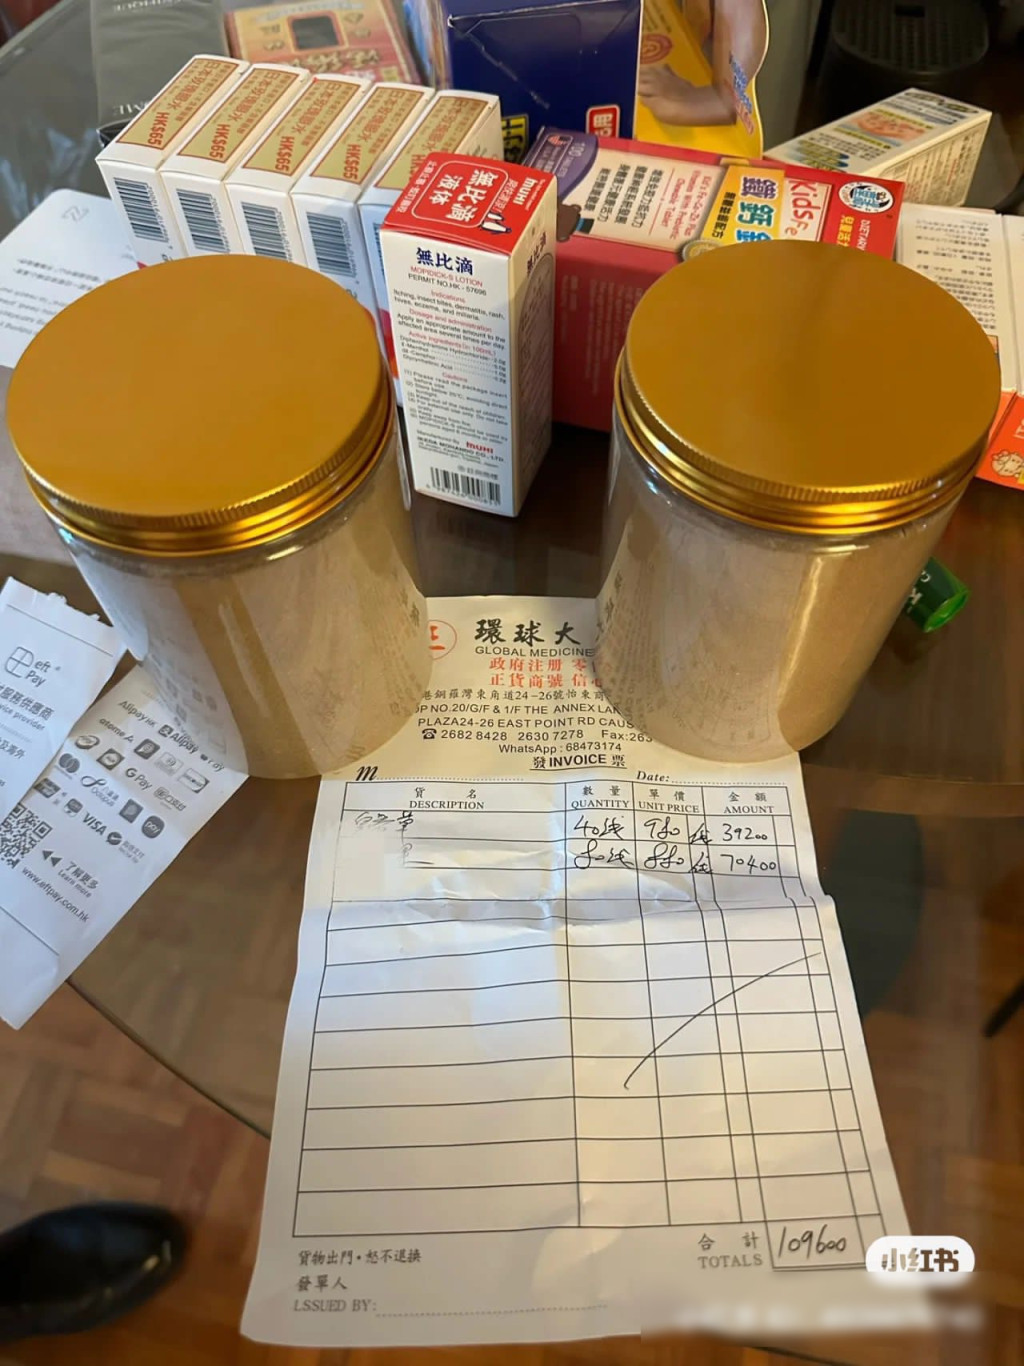 女事主上載藥坊單據及藥粉罐，顯示被收取近11萬港元天價。小紅書圖片